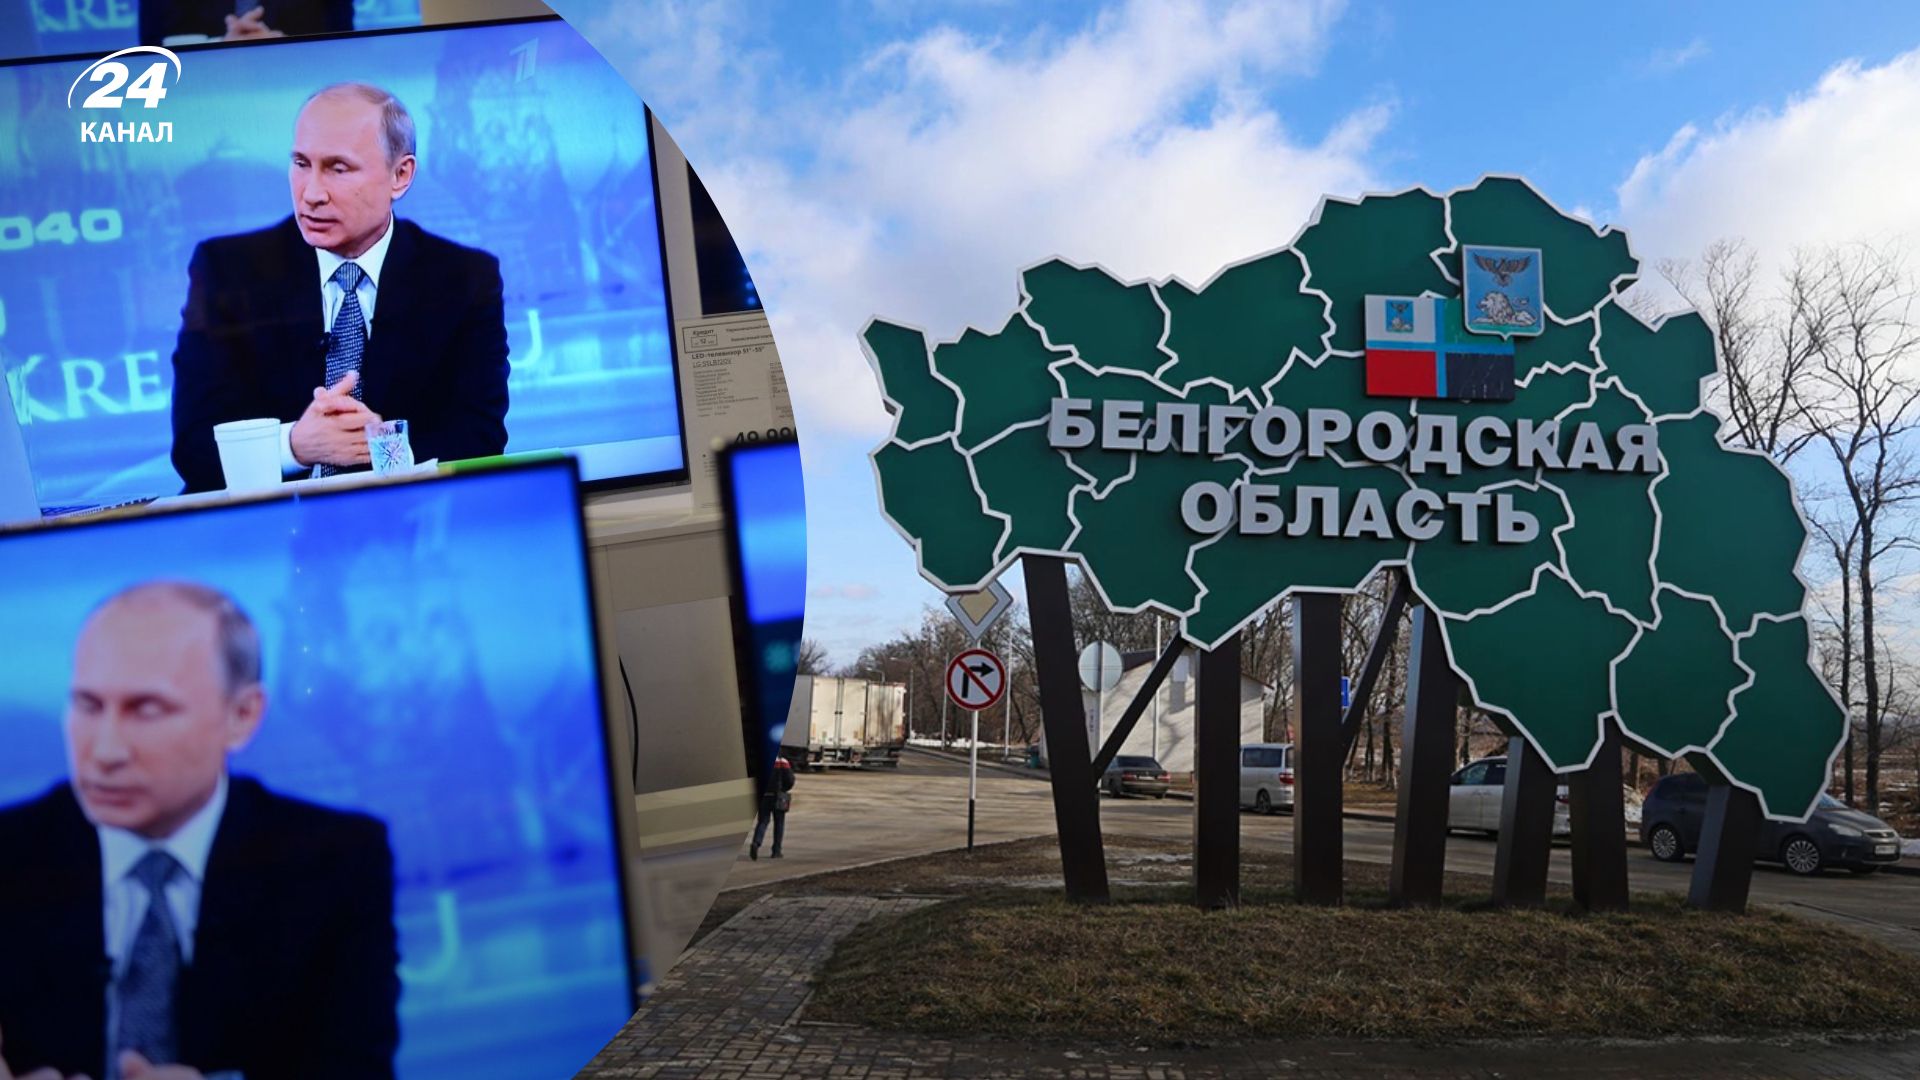 Напад на Бєлгородську область - Кремль вигадує байки про наступ України